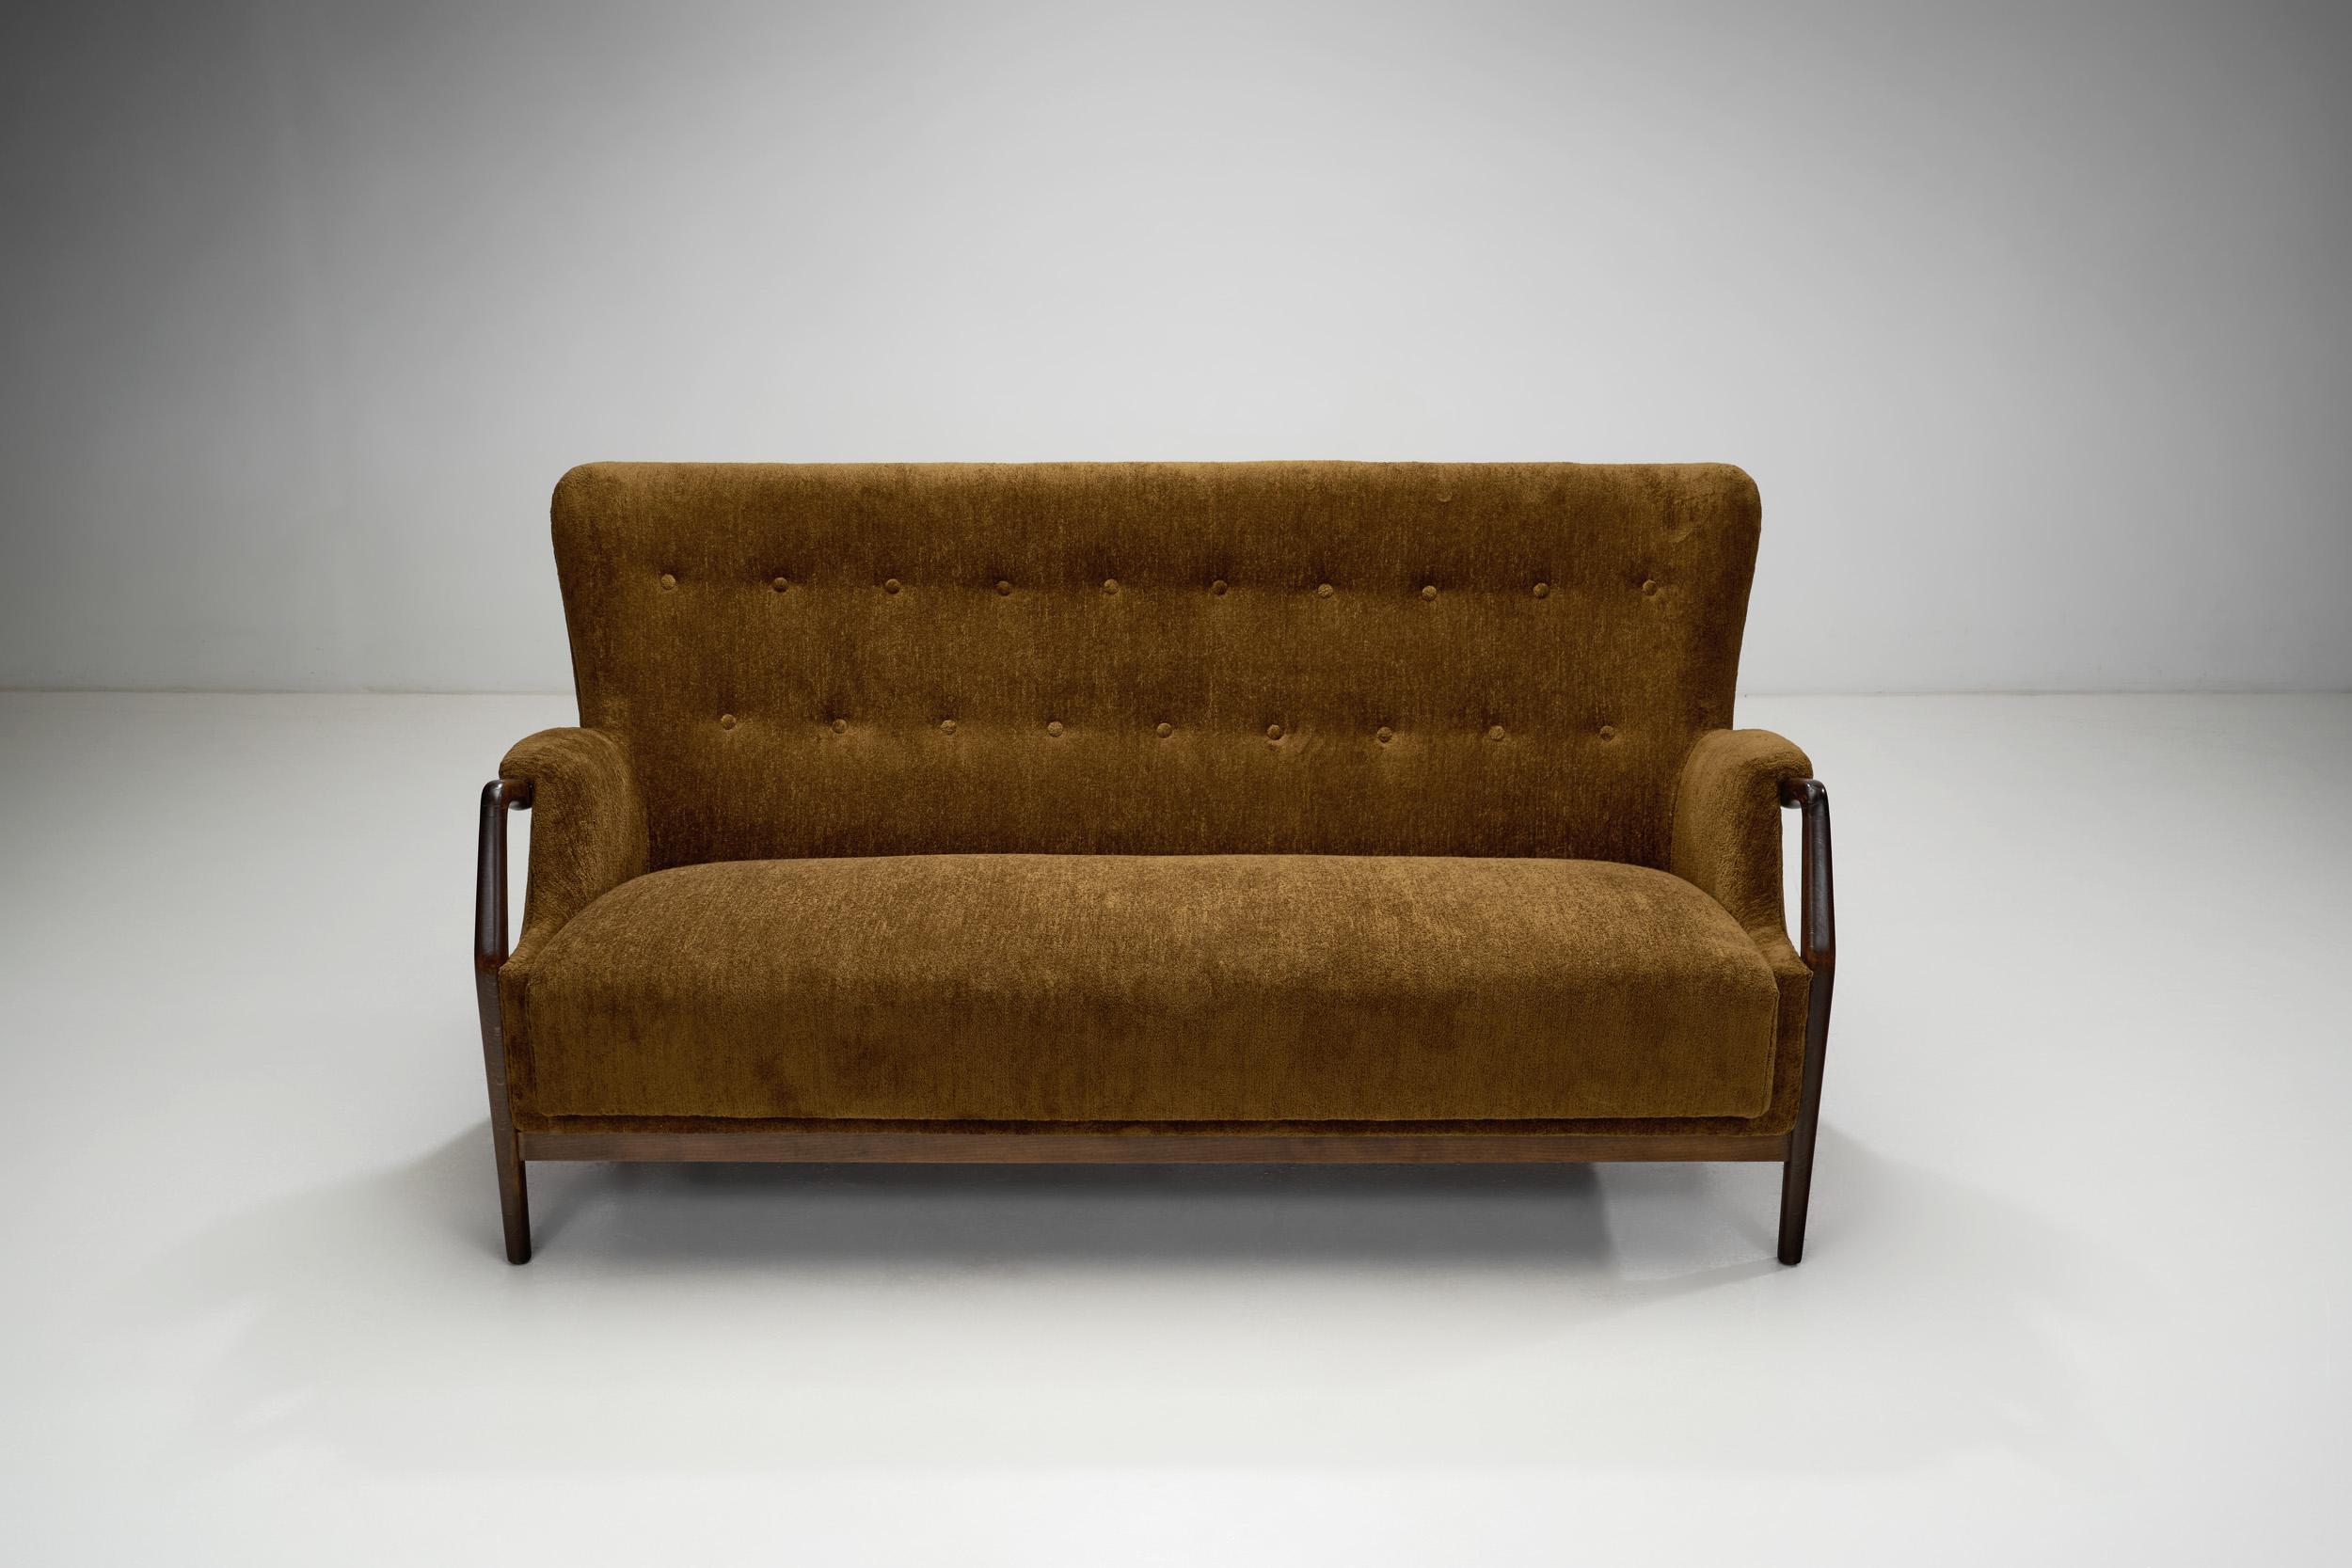 Mid-20th Century “Model 214” Two-Seater Sofa by Kurt Olsen for Slagelse Møbelværk, Denmark 1960s